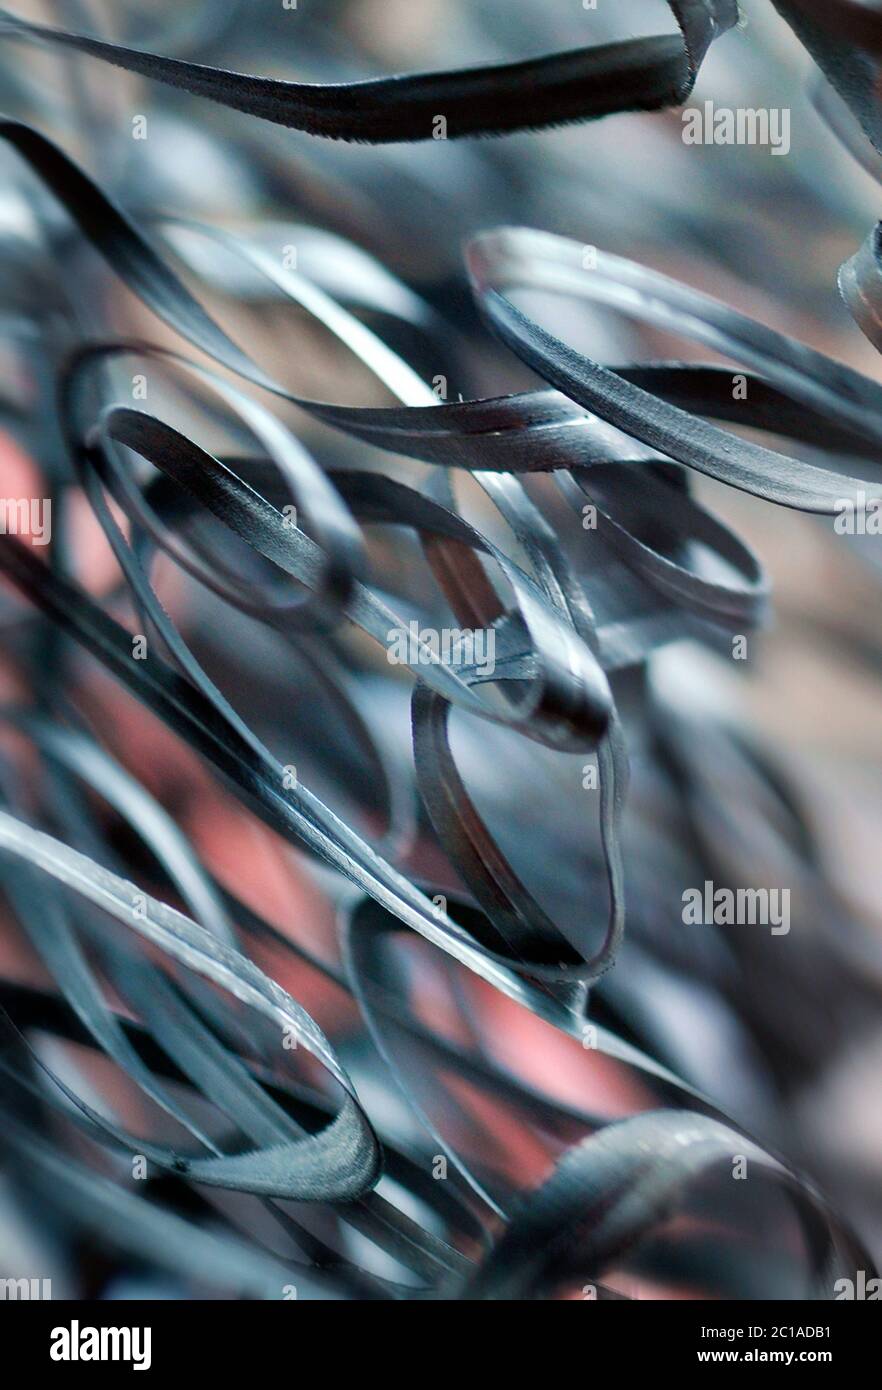 immagine astratta di trucioli di rasatura in metallo provenienti da tornio industriale Foto Stock